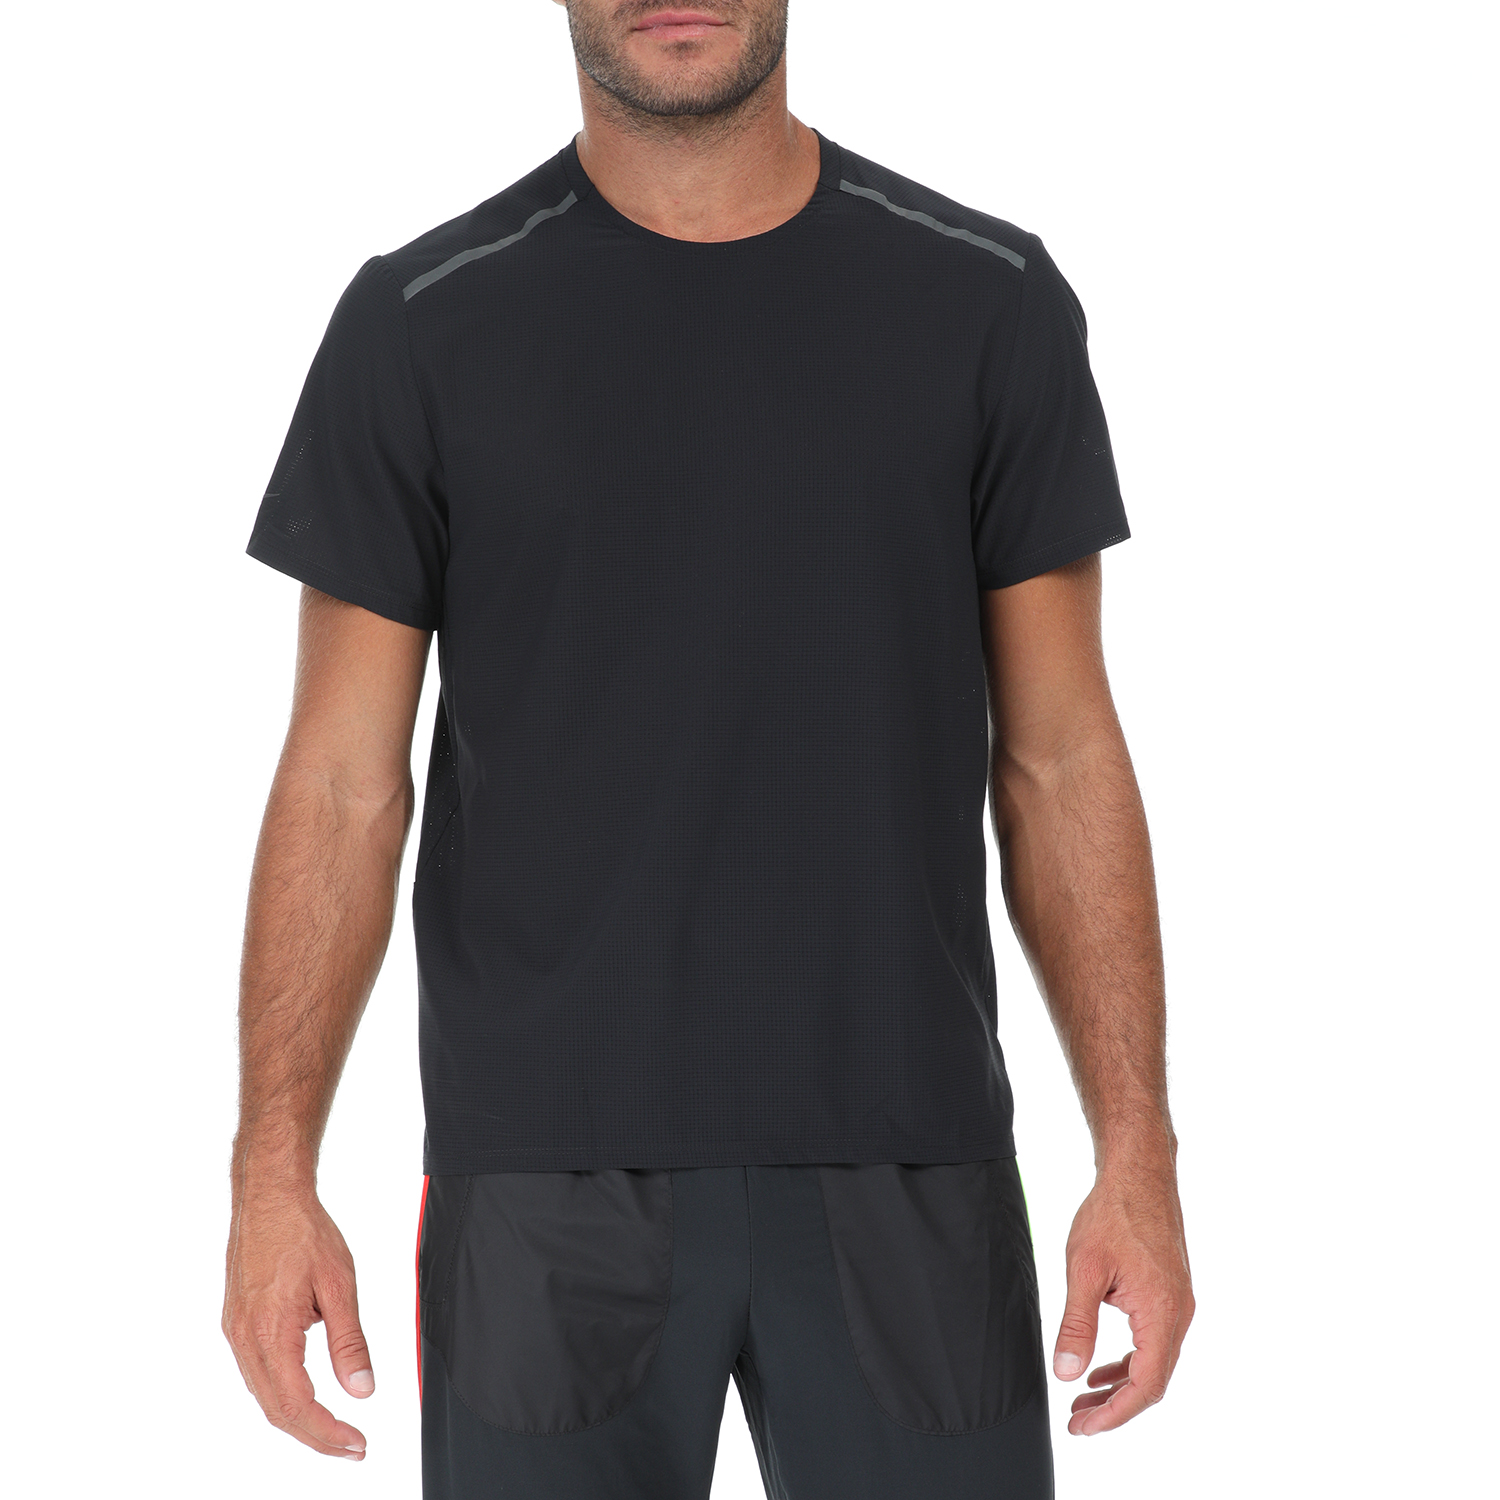 Ανδρικά/Ρούχα/Αθλητικά/T-shirt NIKE - Ανδρικό t-shirt NIKE TCH PCK SS TOP μαύρο